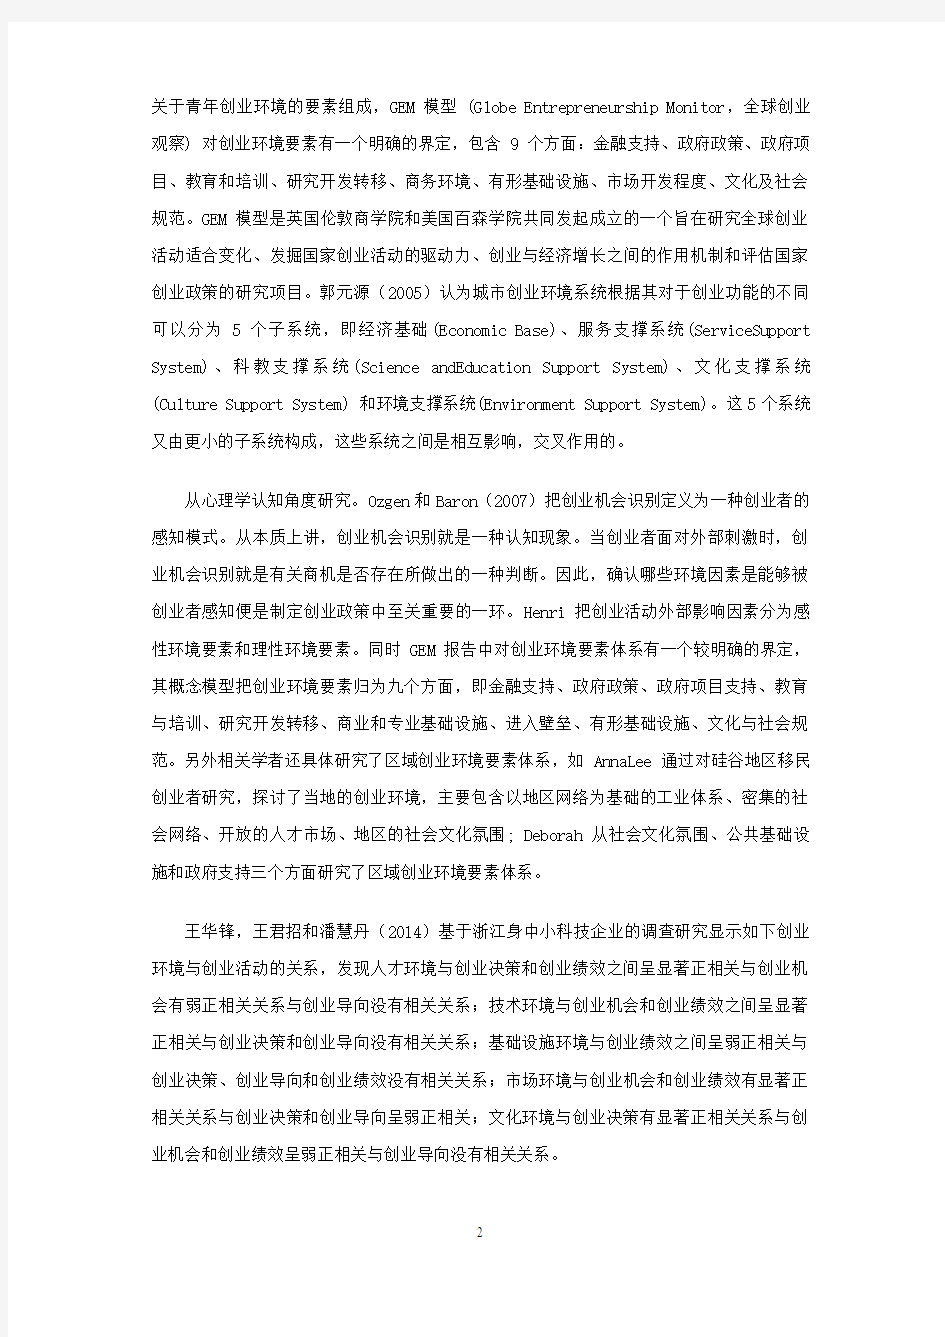 上海地区创业者创新创业环境激励因素分析0316